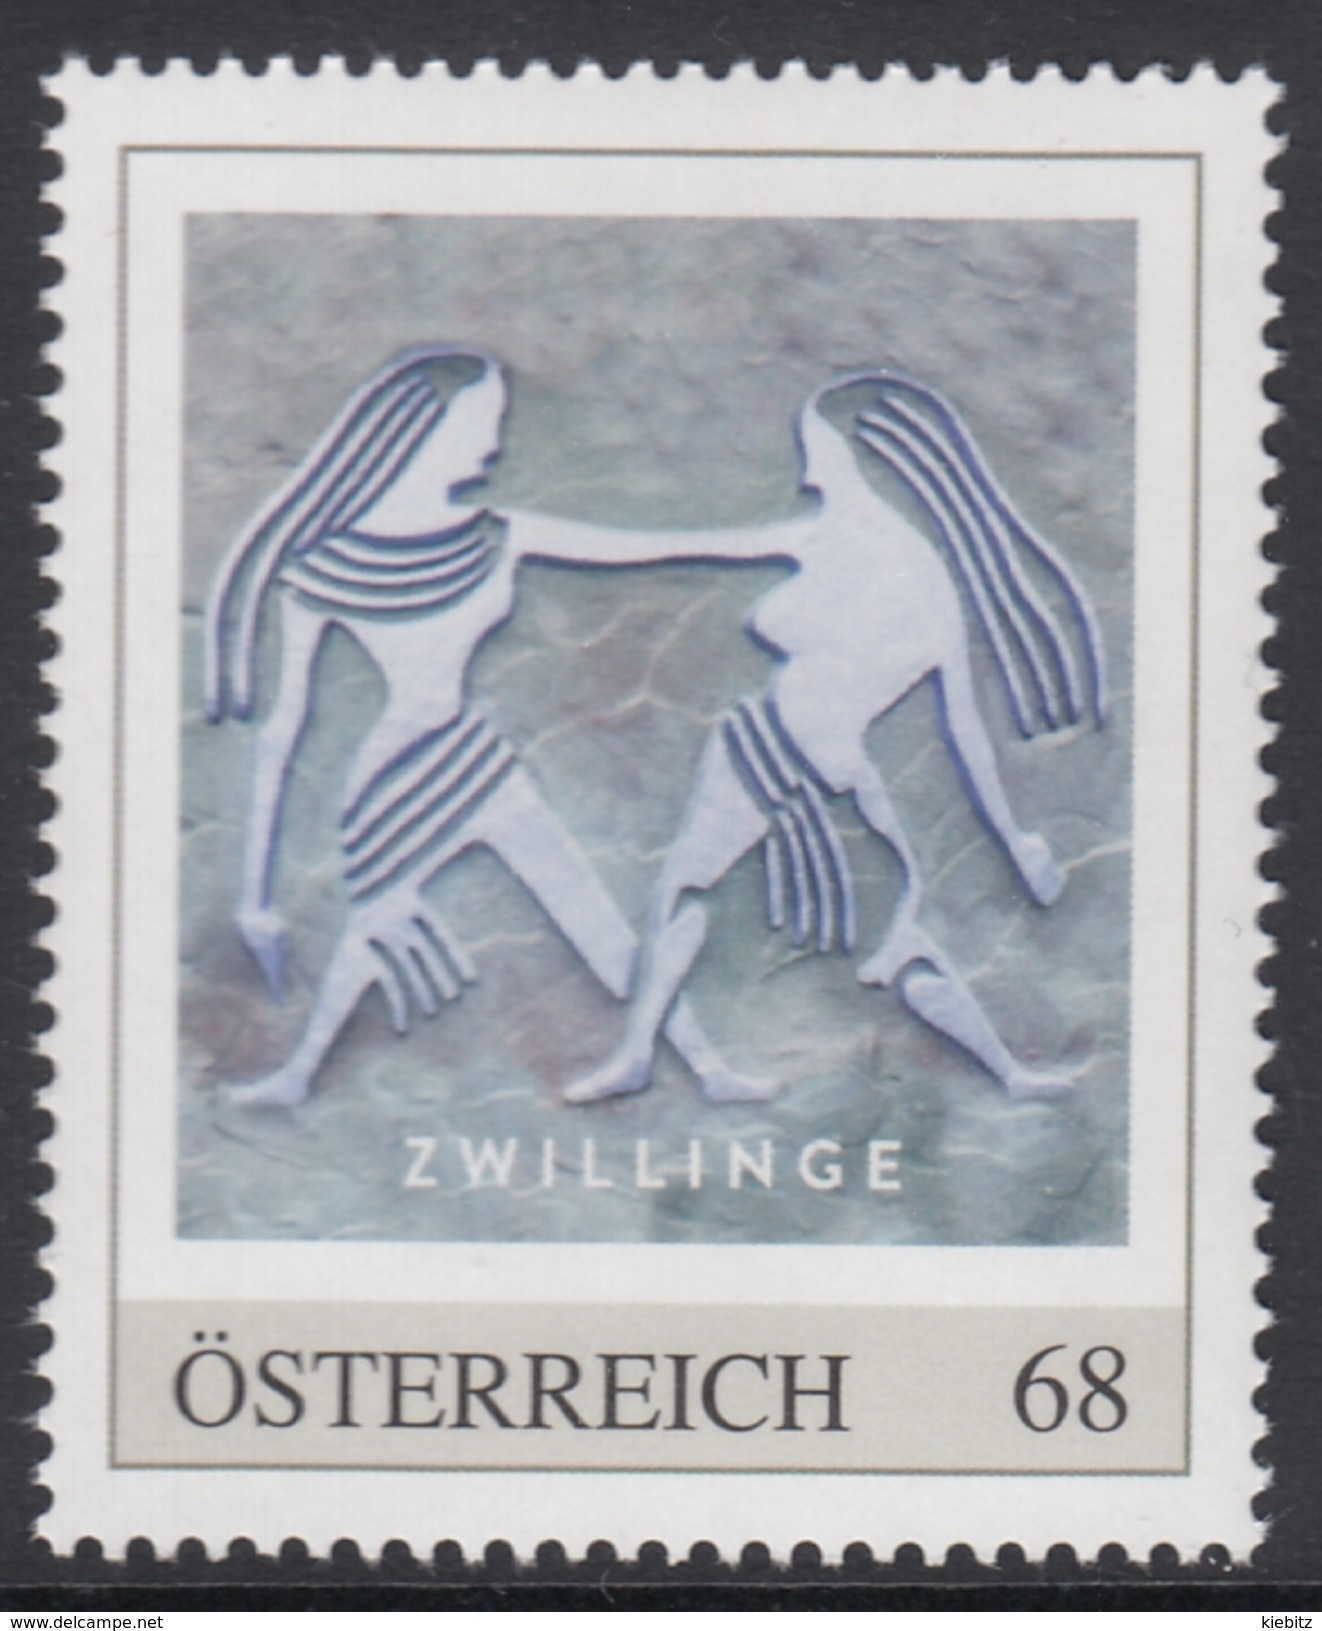 ÖSTERREICH 2016 ** Astrologie - ZWILLINGE Sternzeichen - PM Personalized Stamp MNH - Astrologie